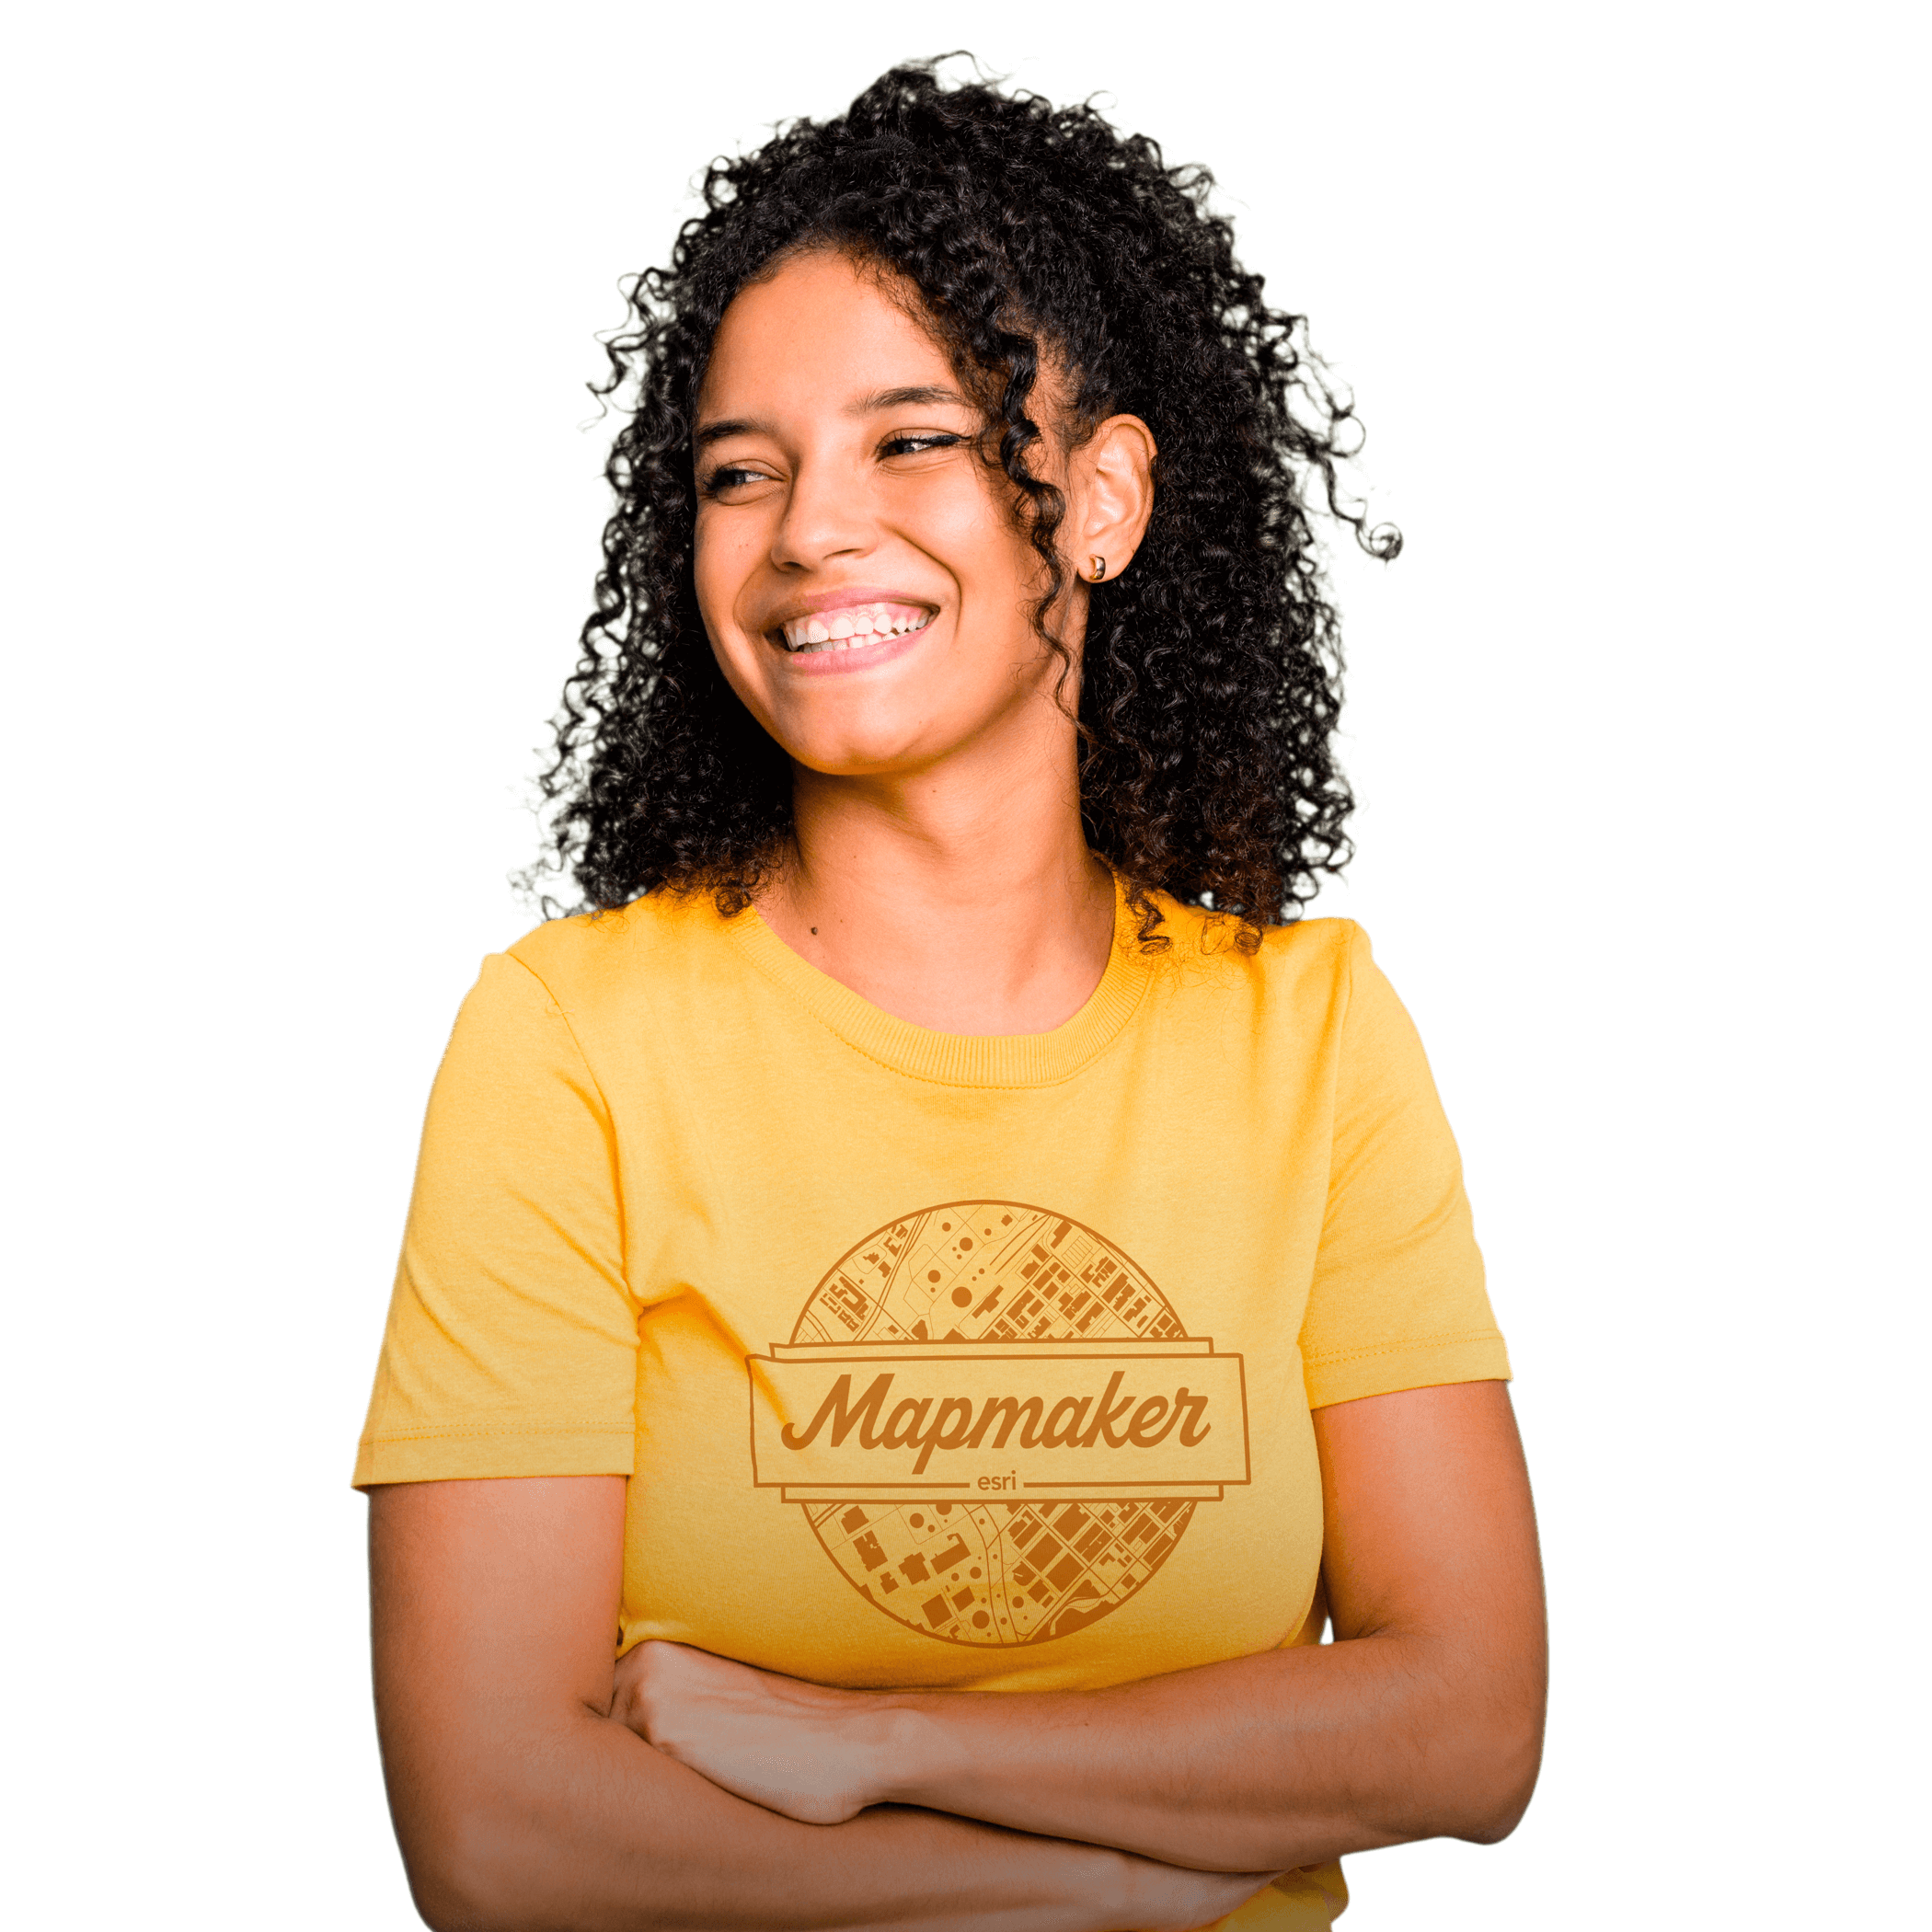 파란색, 빨간색, 따뜻한 노란색을 띤 추상적인 기하학적 배경을 바탕으로 "Mapmaker"라는 슬로건이 적힌 노란색 티셔츠를 입은 채 웃고 있는 사람